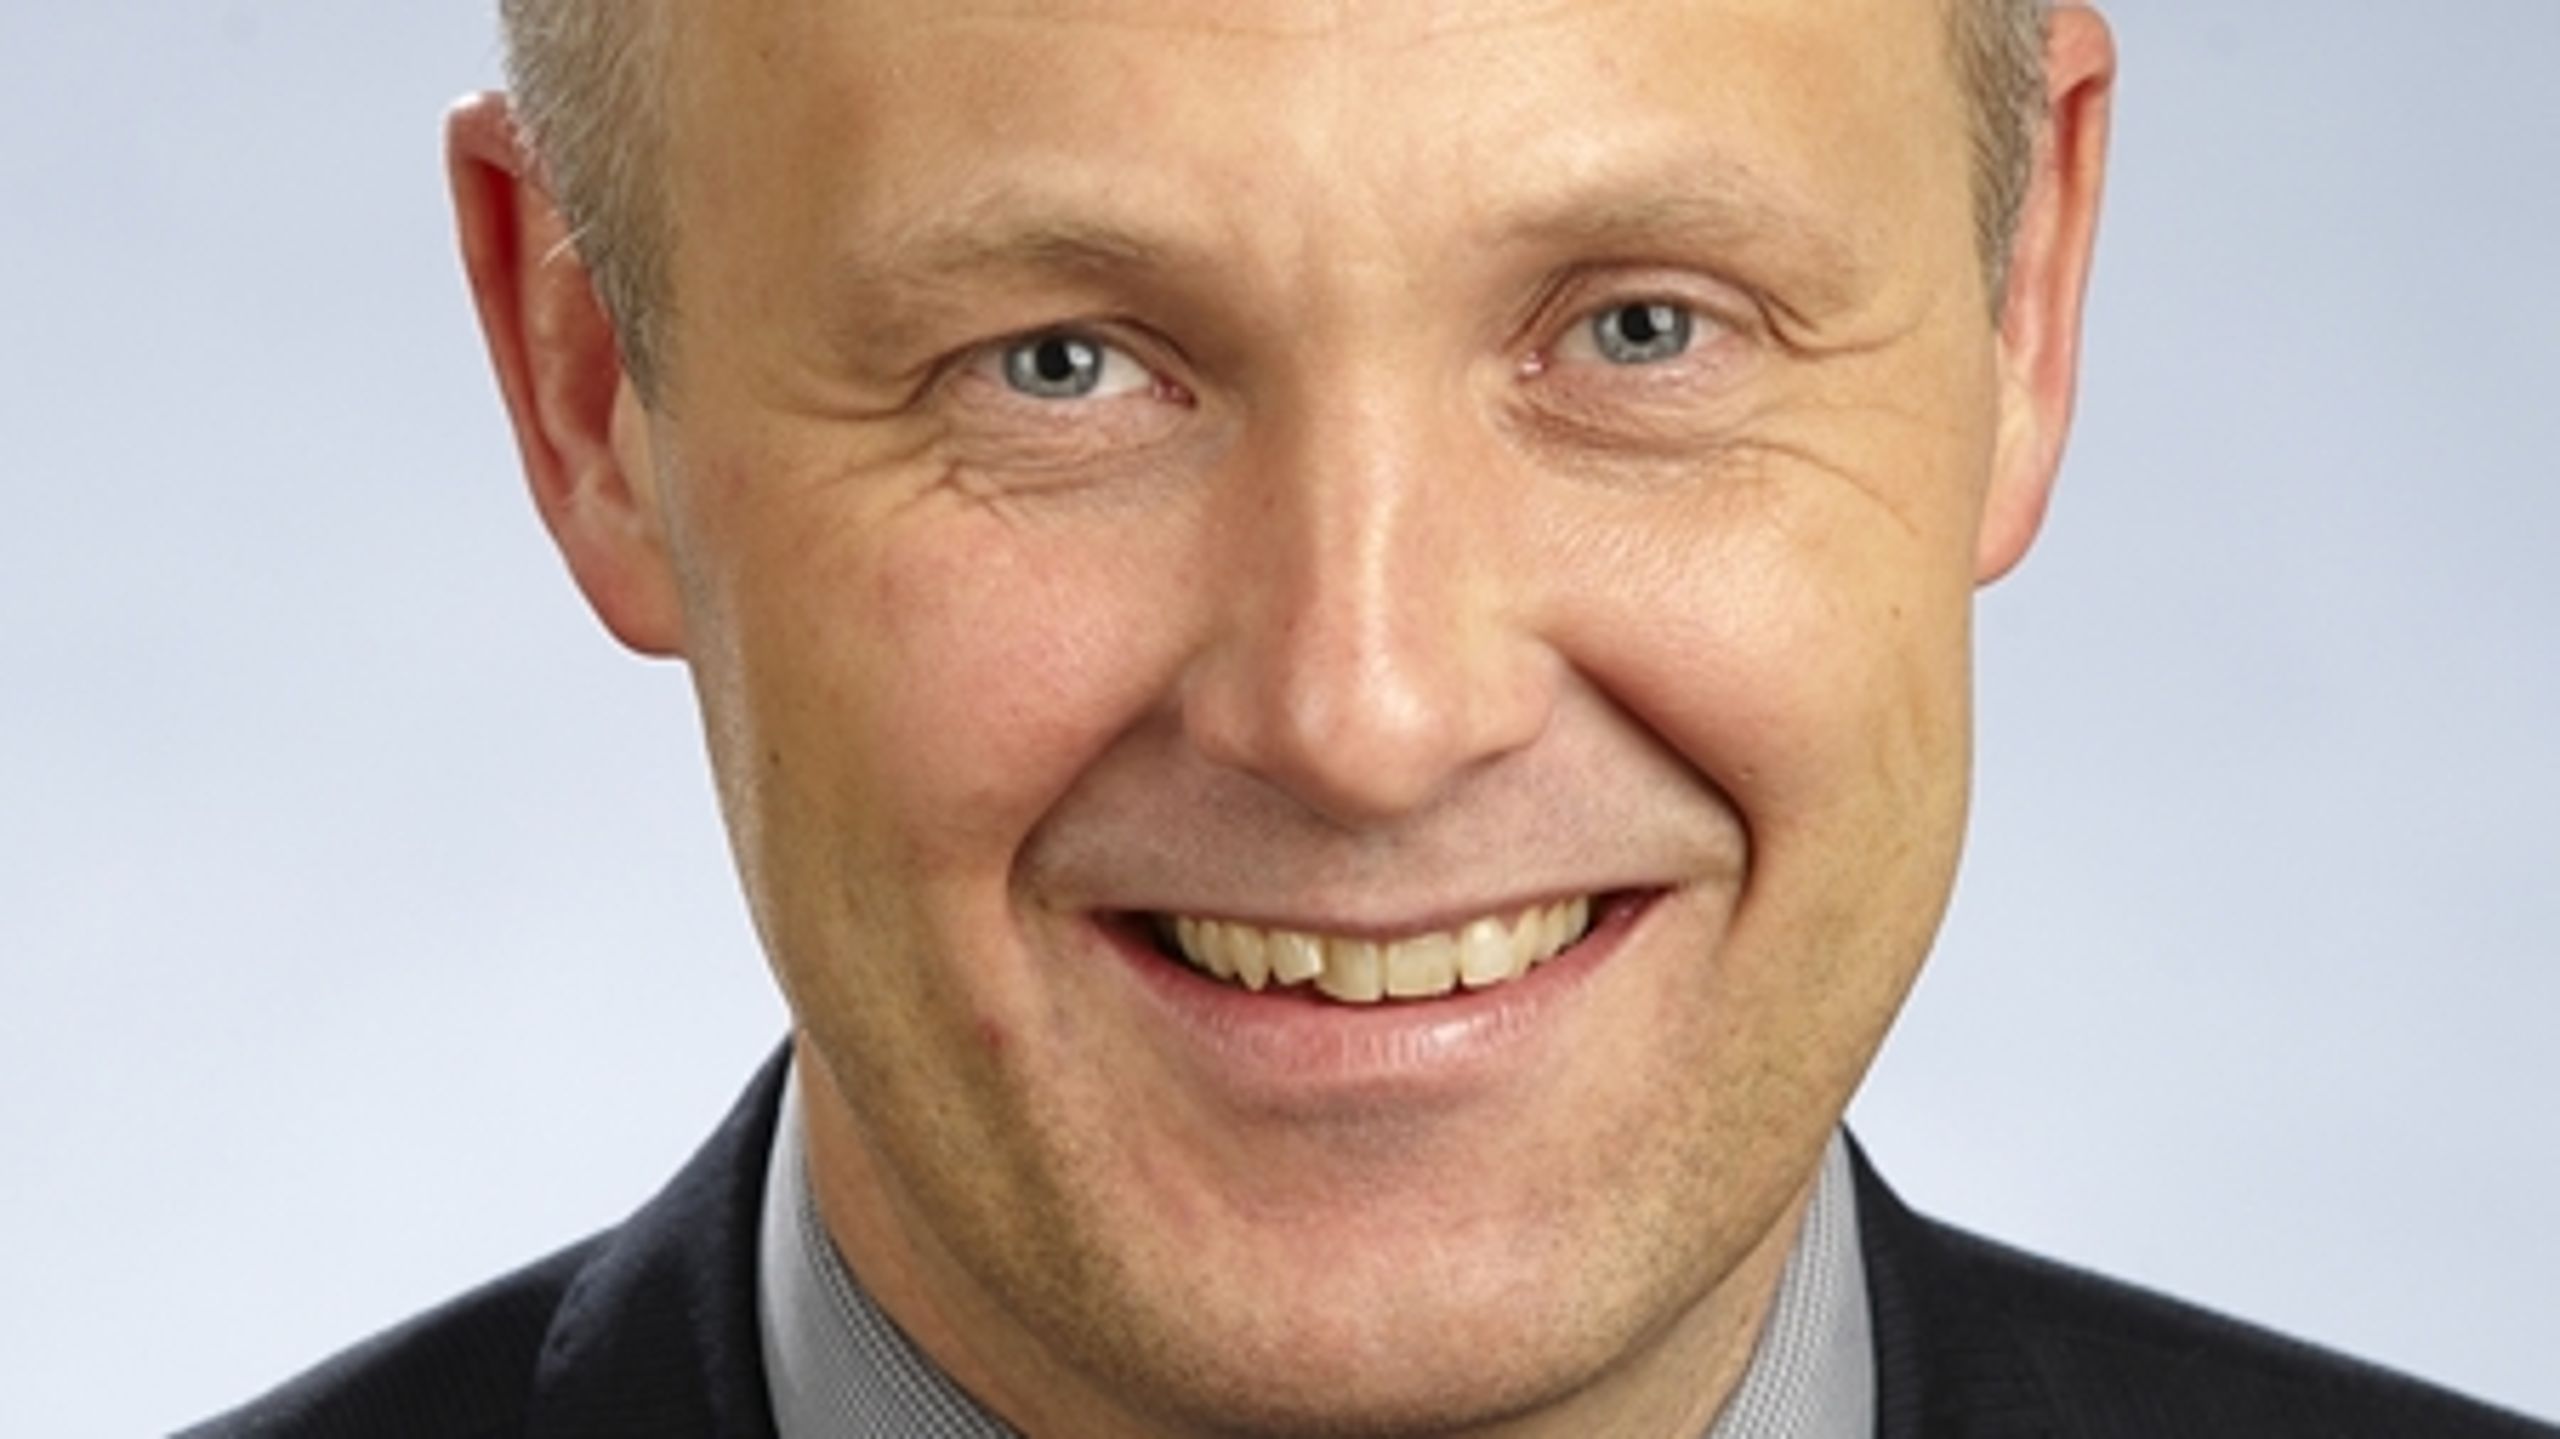 Kalundborgs borgmester, Martin Damm (V), bliver ny formand for KL med støtte fra Radikale.